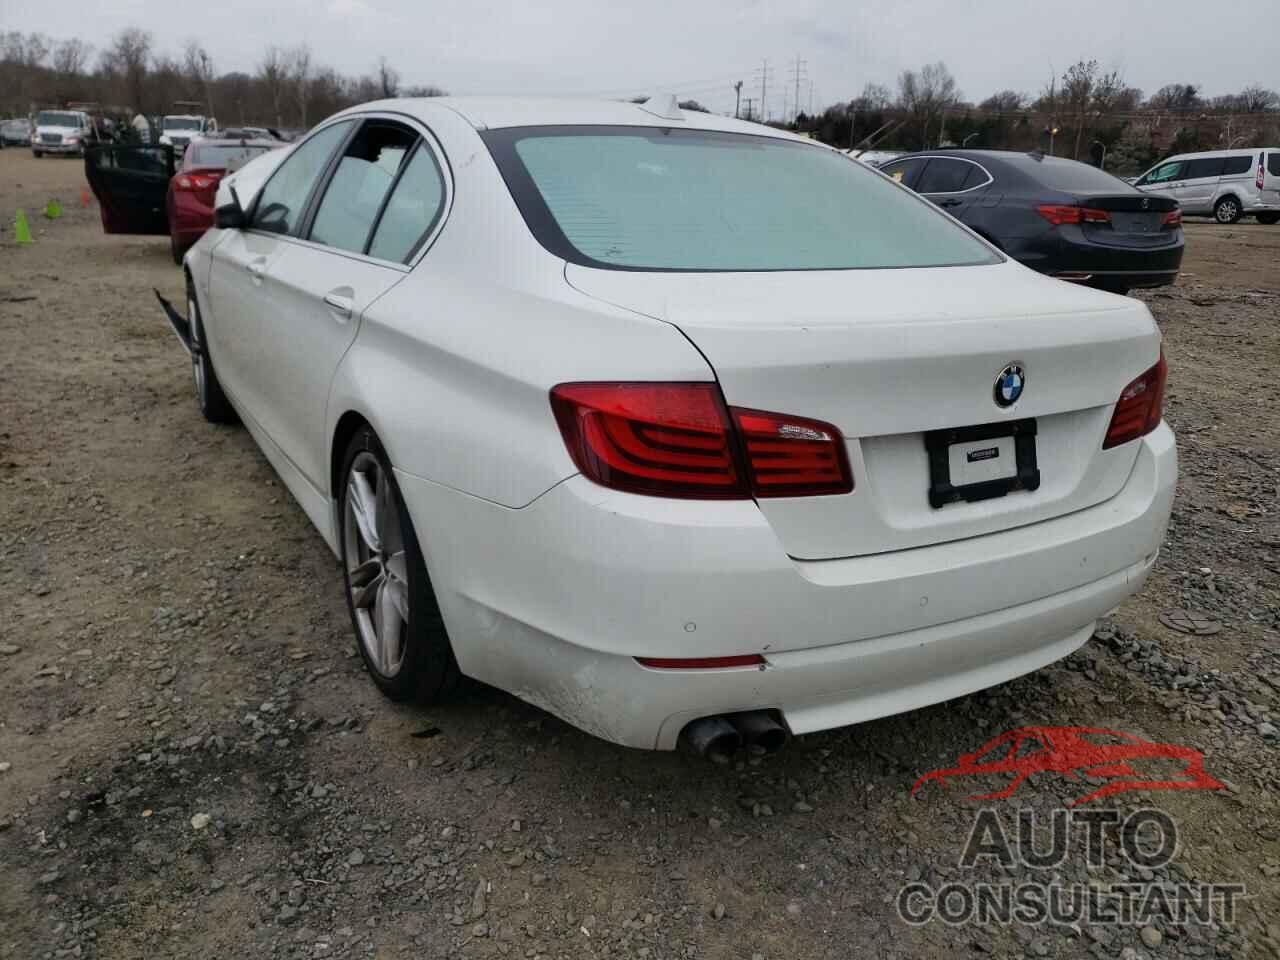 BMW 5 SERIES 2012 - WBAXG5C53CDX06078